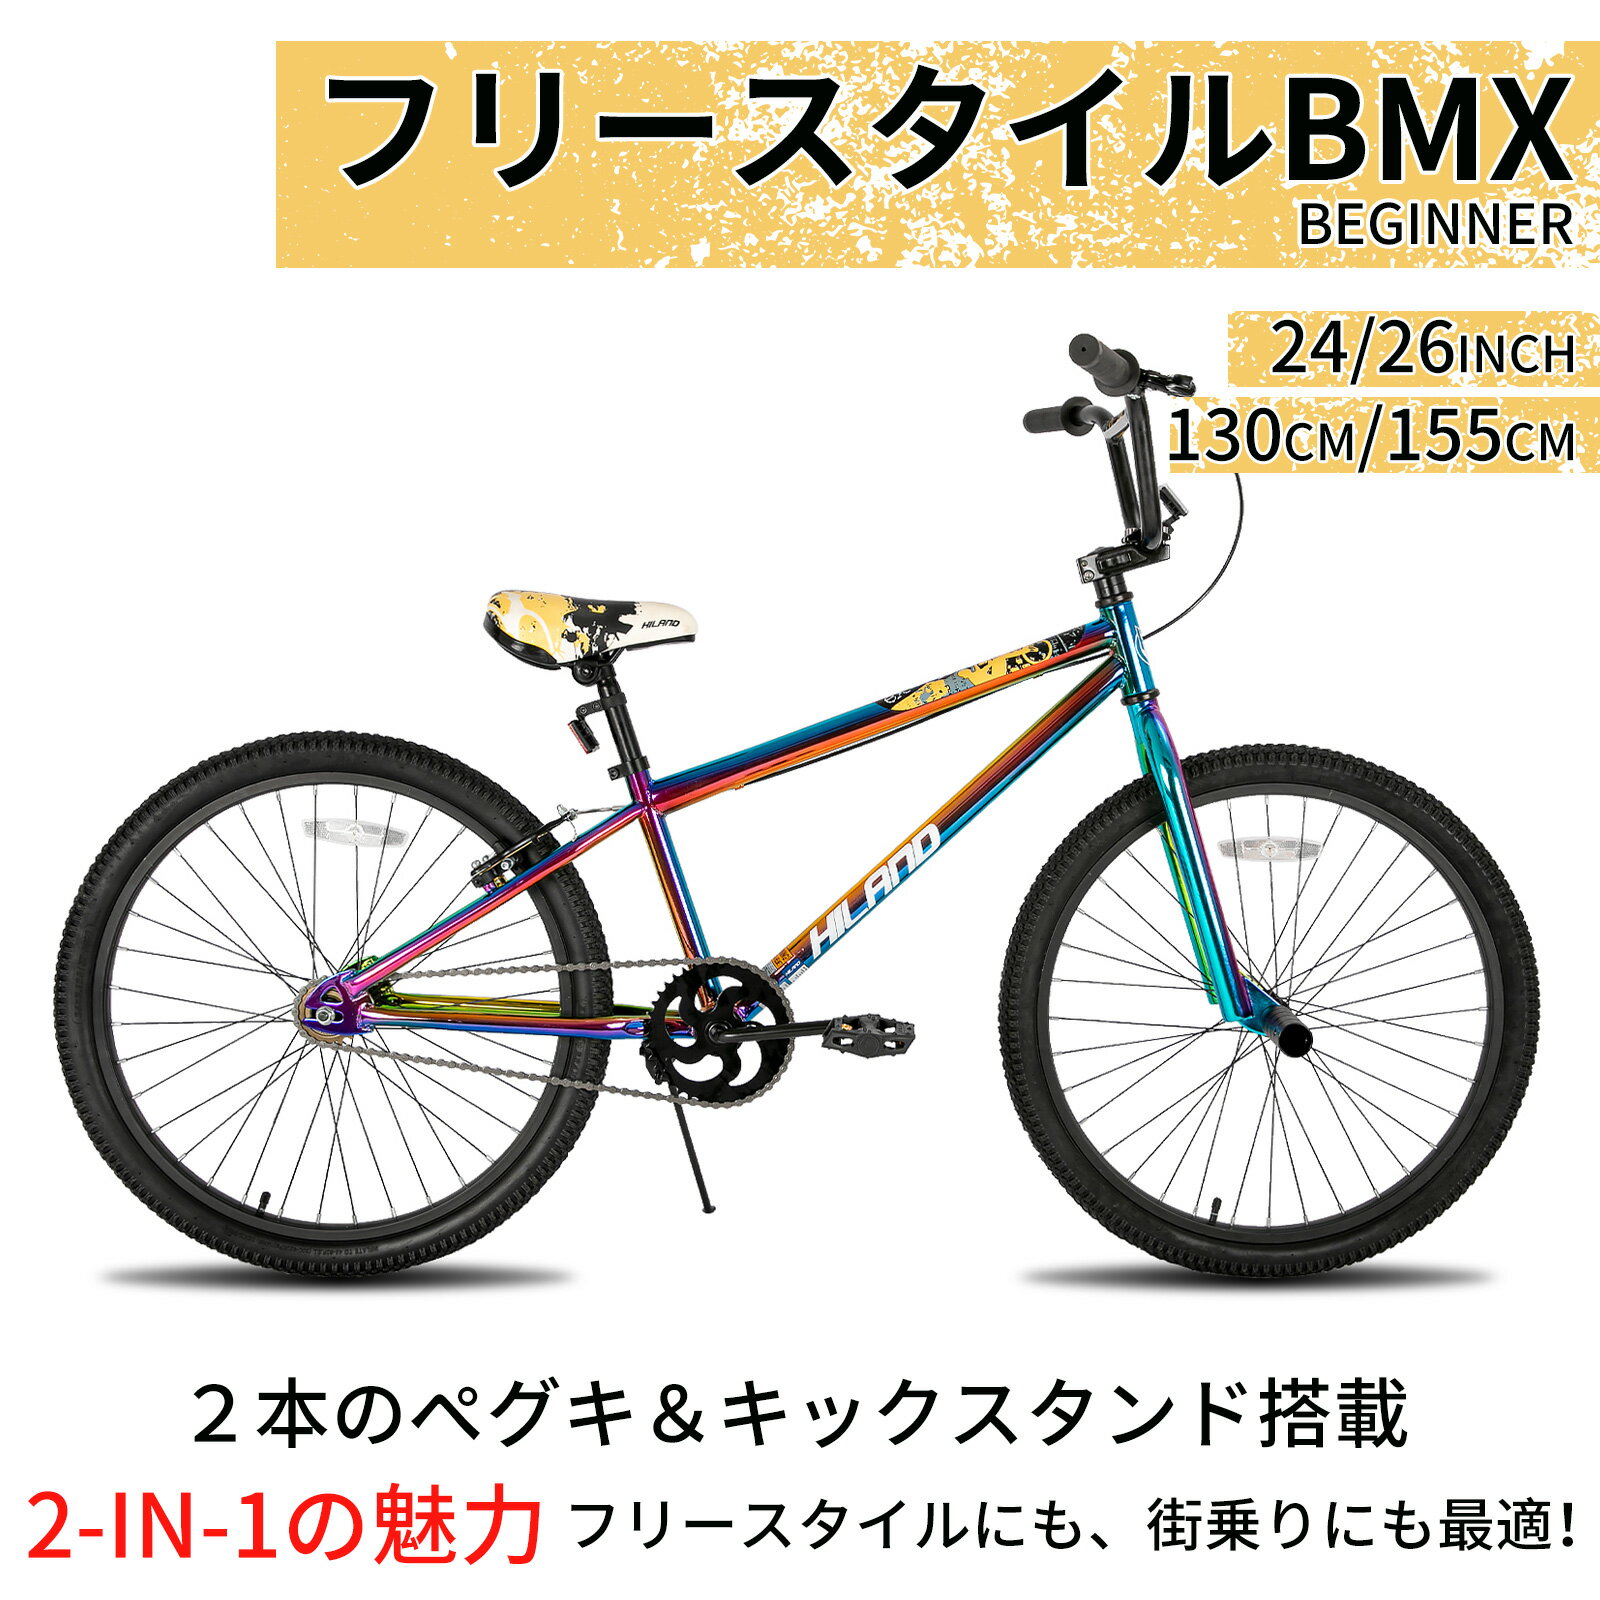 【送料無料】HILAND 24 26インチ BMX自転車 フリースタイル 初心者向け 練習用bmx ...